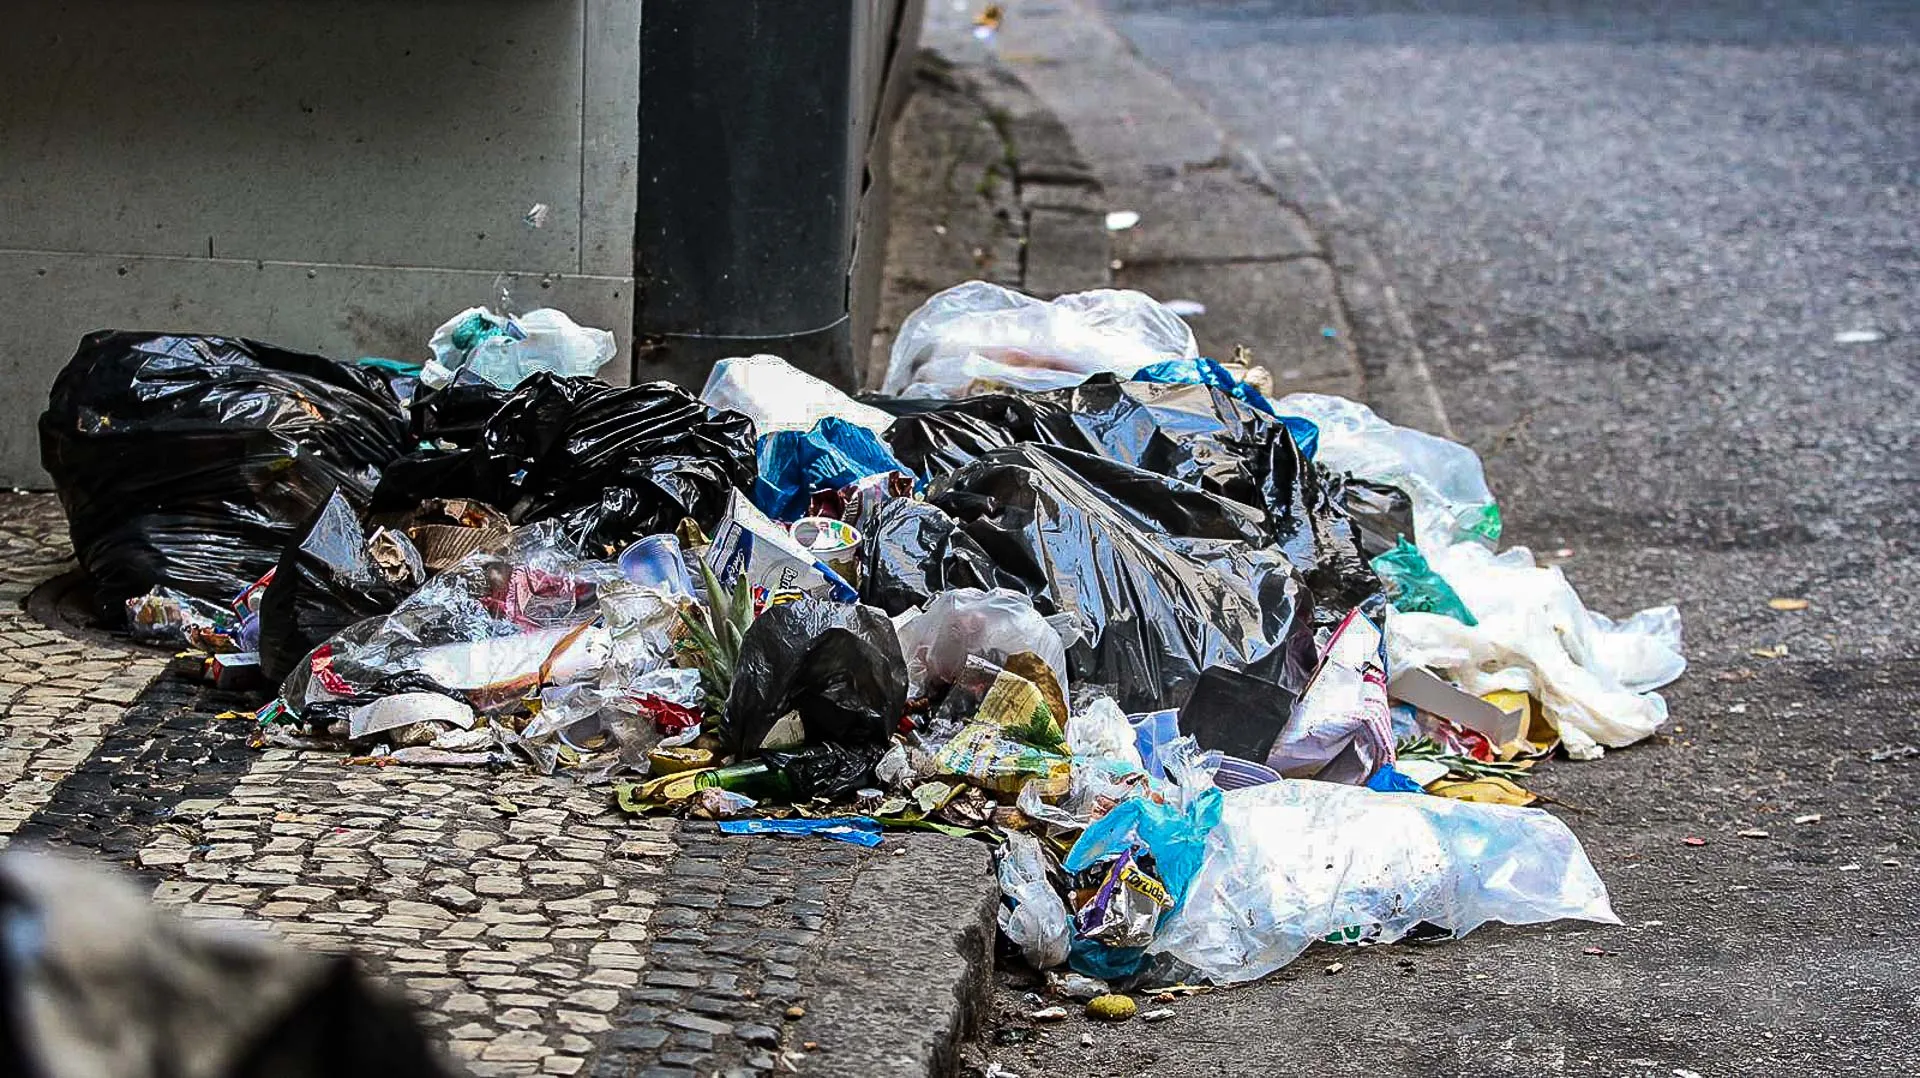 A greve dos garis chega ao quarto dia, trazendo como consequências muito lixo espalhado pela cidade do Rio de Janeiro.